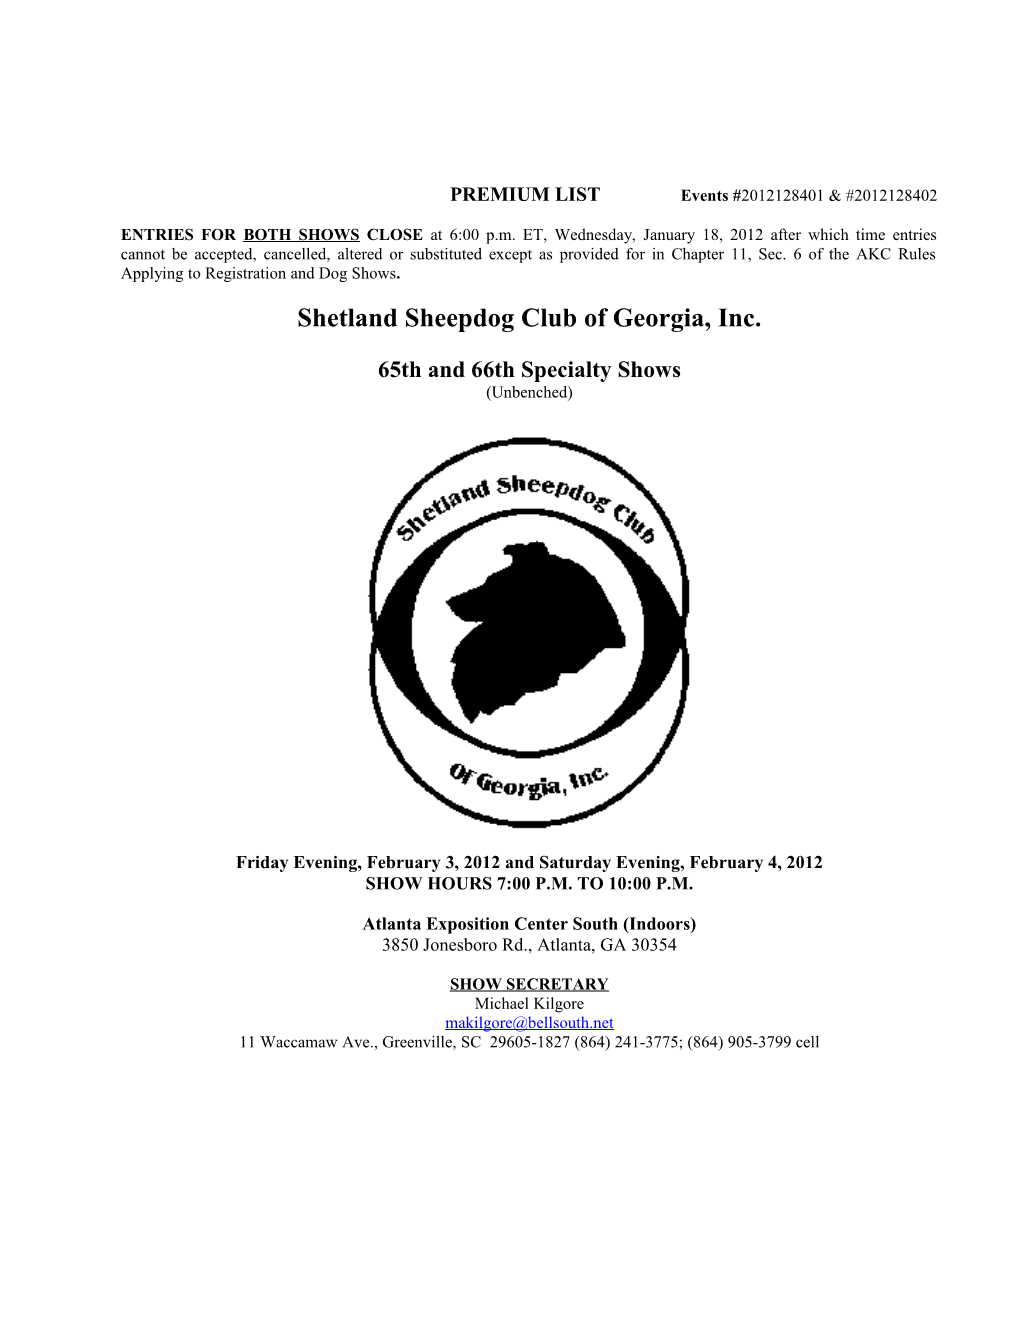 Shetland Sheepdog Club of Georgia, Inc